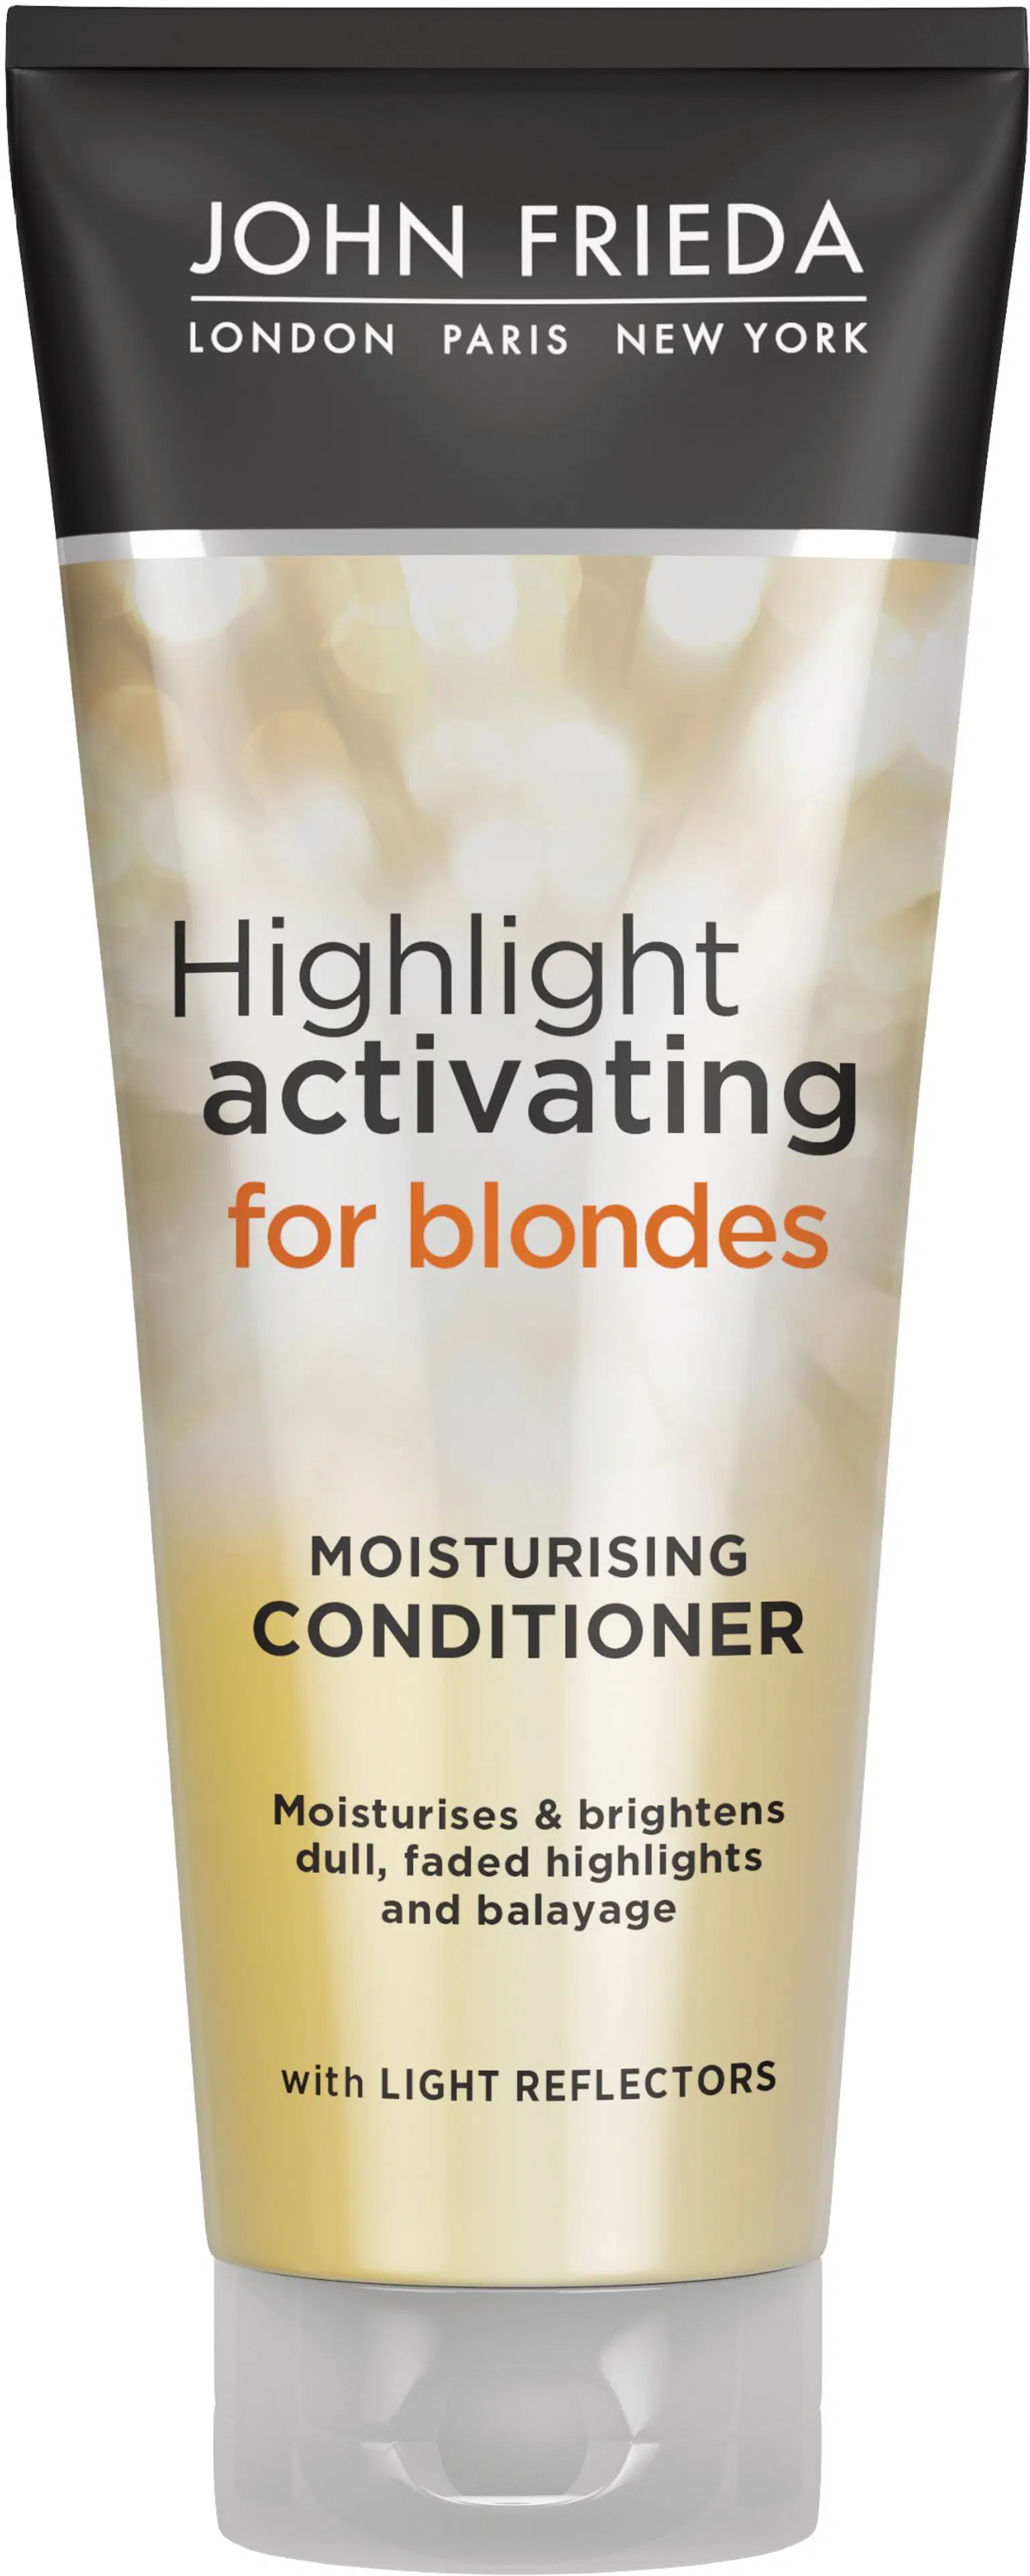 John Frieda Highlight Activating for blondes Moisturising hoitoaine 250 ml